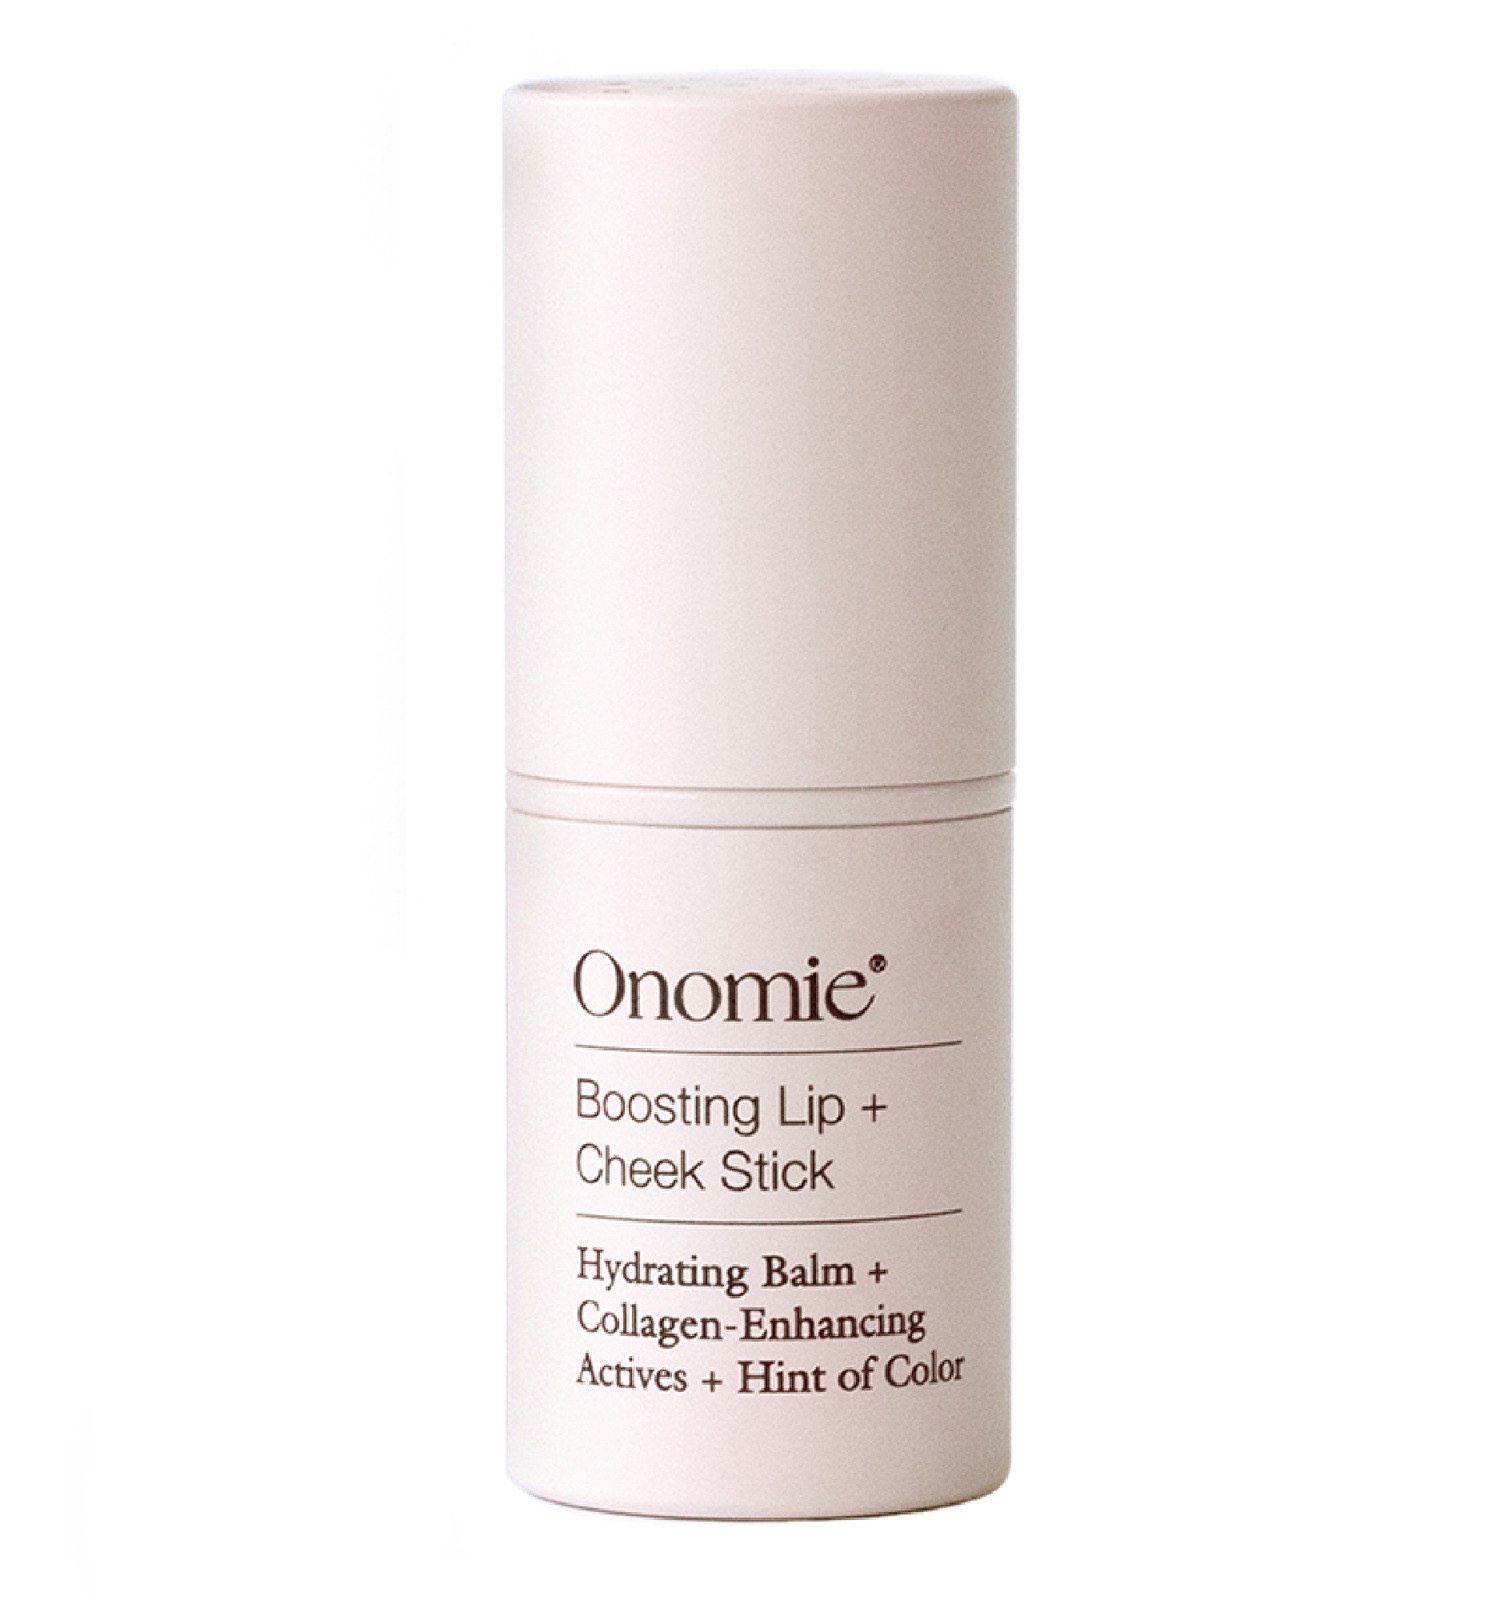 Onomie Boosting Lip + Cheek Stick